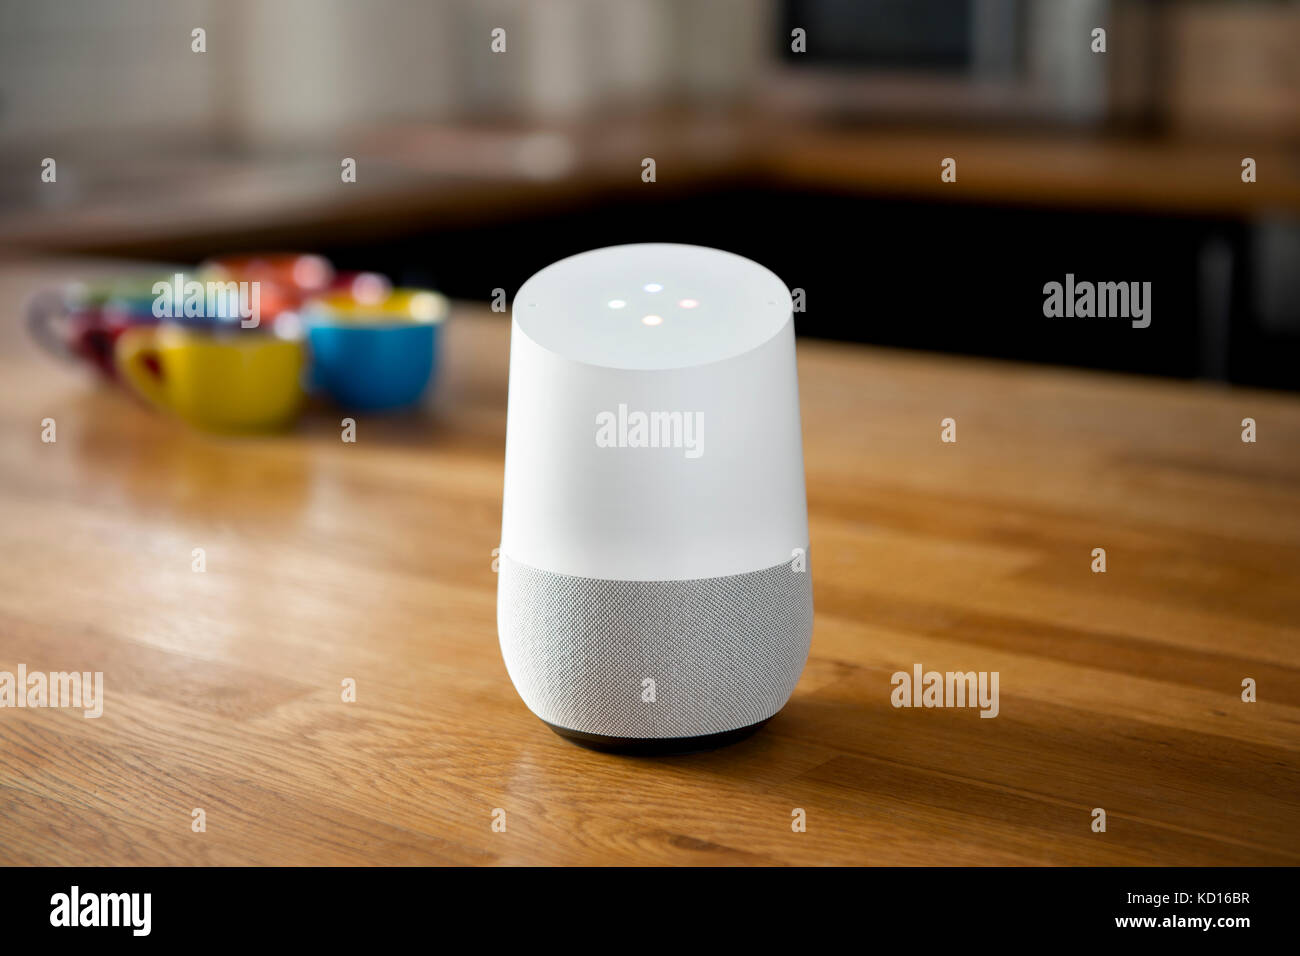 Der Release 2016 Google Home smart Lautsprecher und intelligente persönliche Assistent gerät Geschossen in einer häuslichen Umgebung (nur redaktionelle Nutzung). Stockfoto